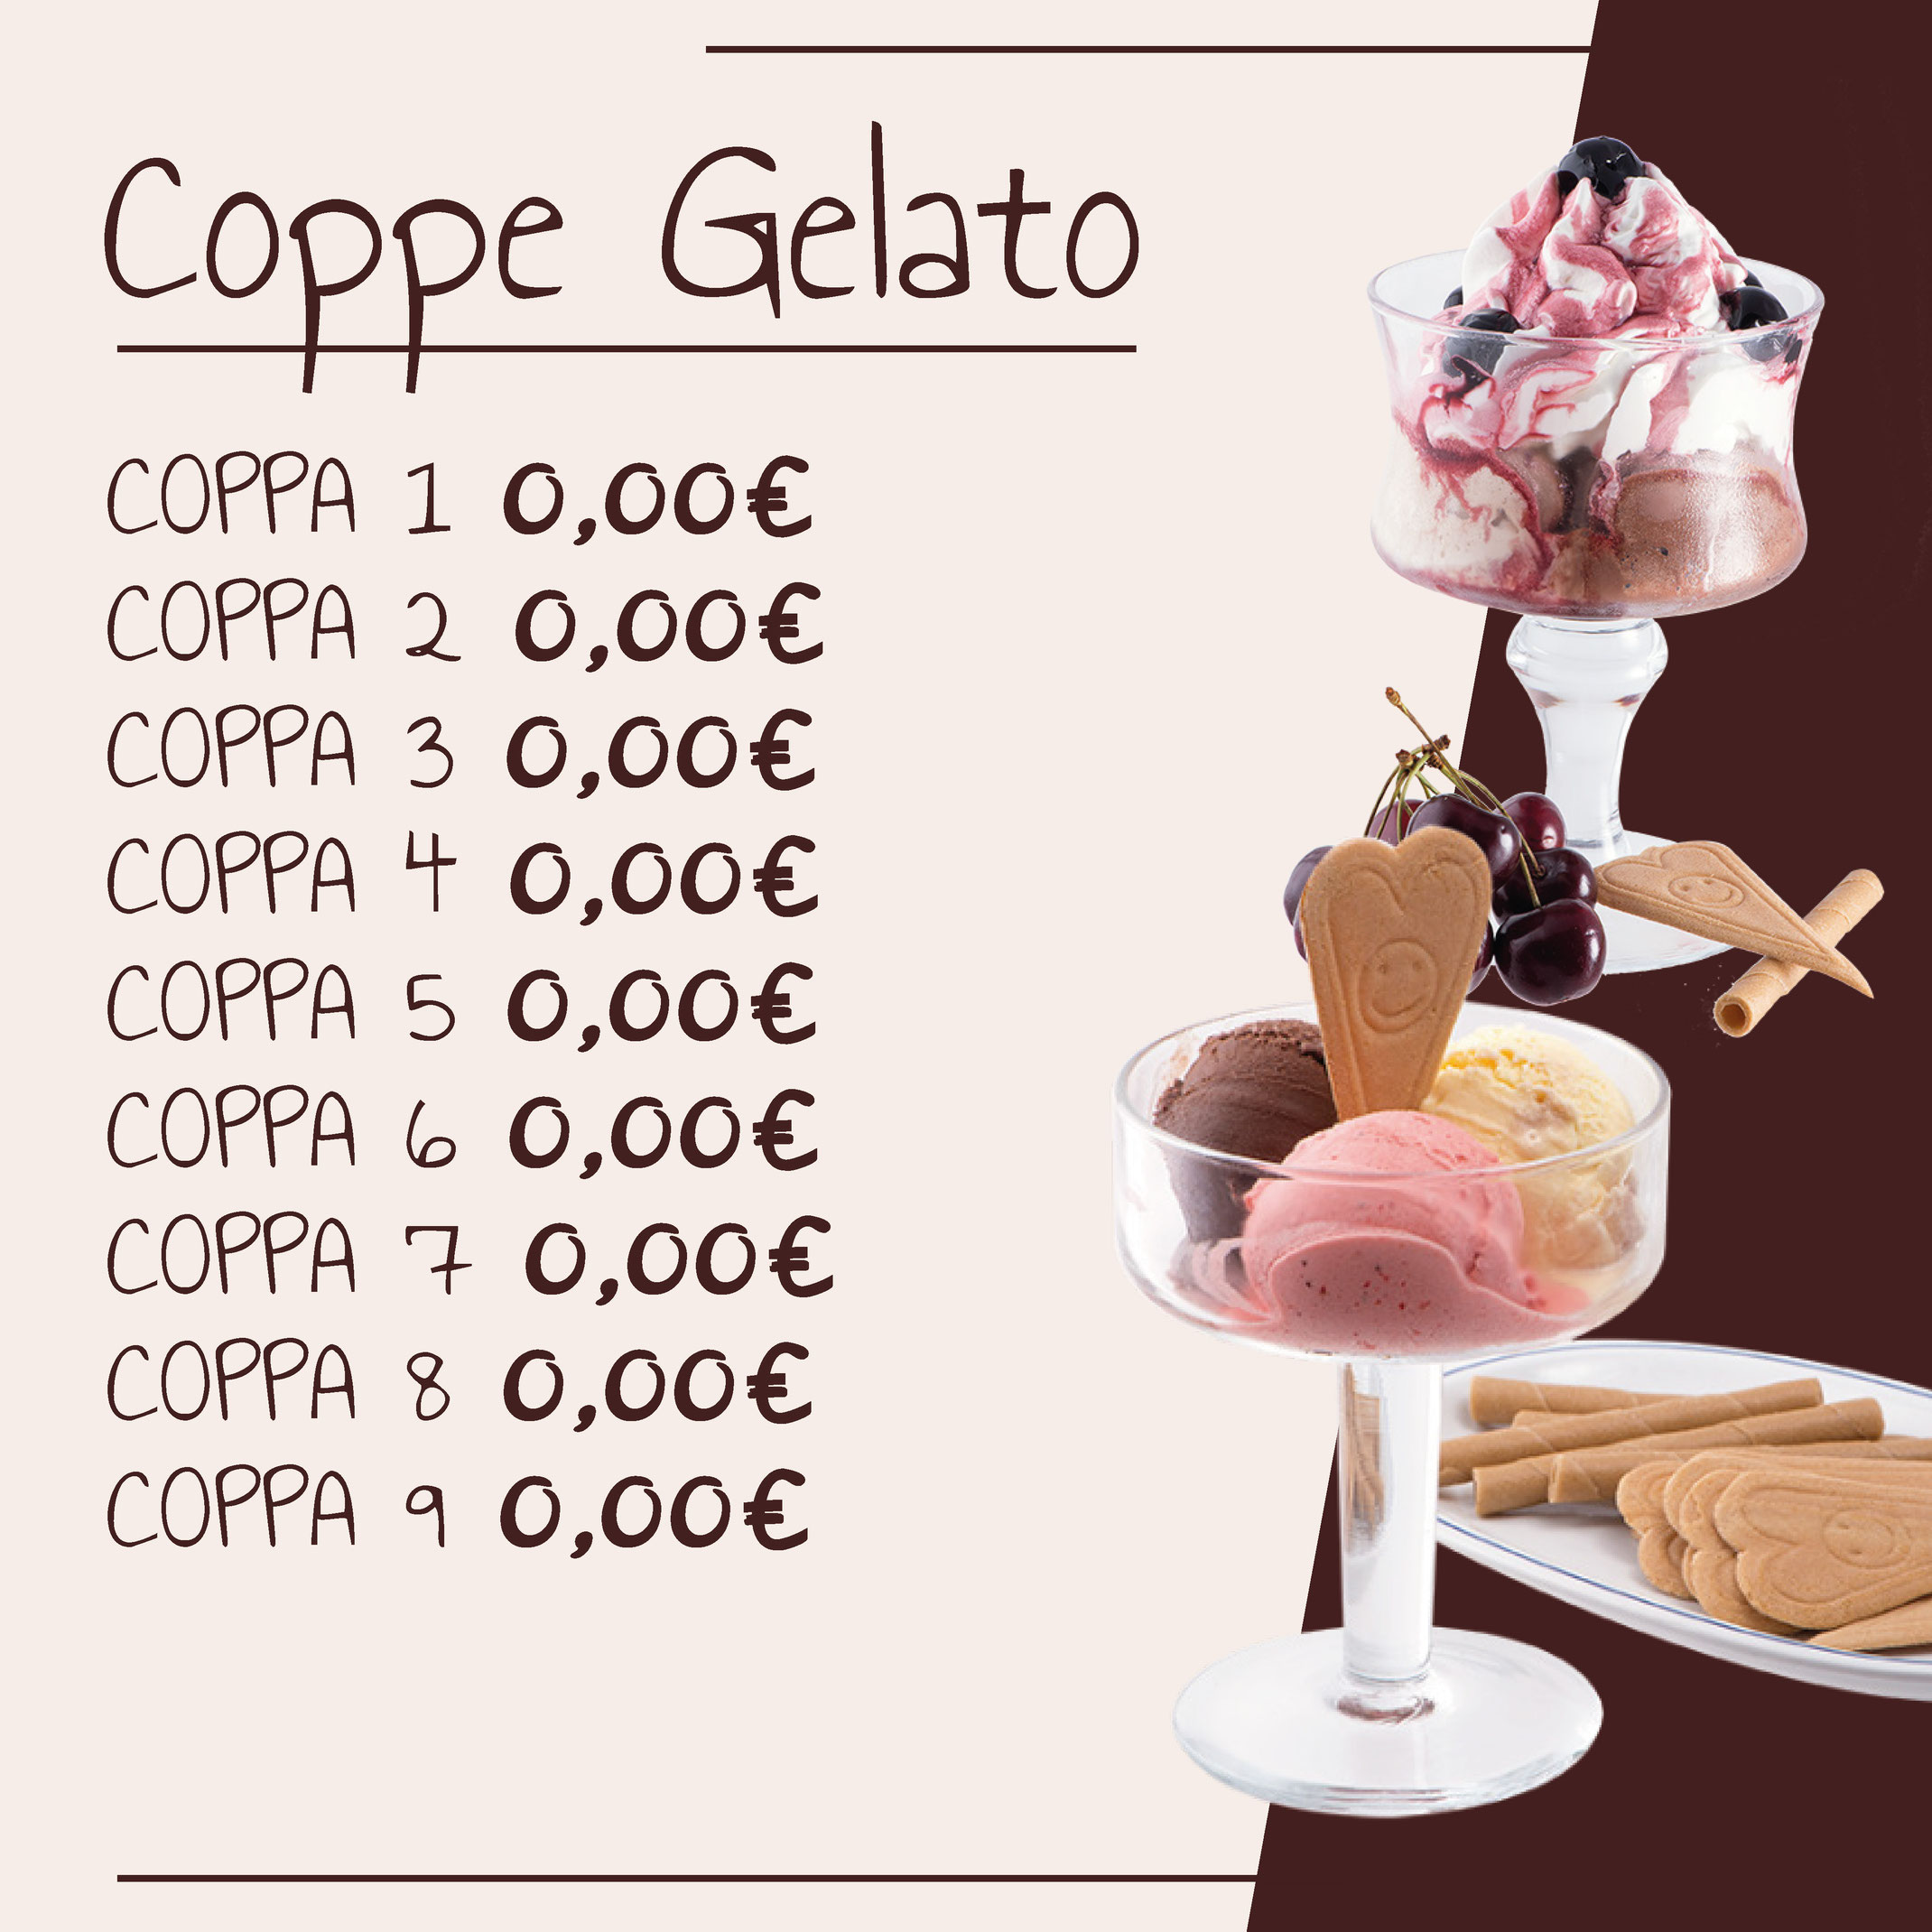 Coppe Gelato - Dolcelisa gelateria, pasticceria, caffetteria, panetteria,  buffet e catering a Vicenza.